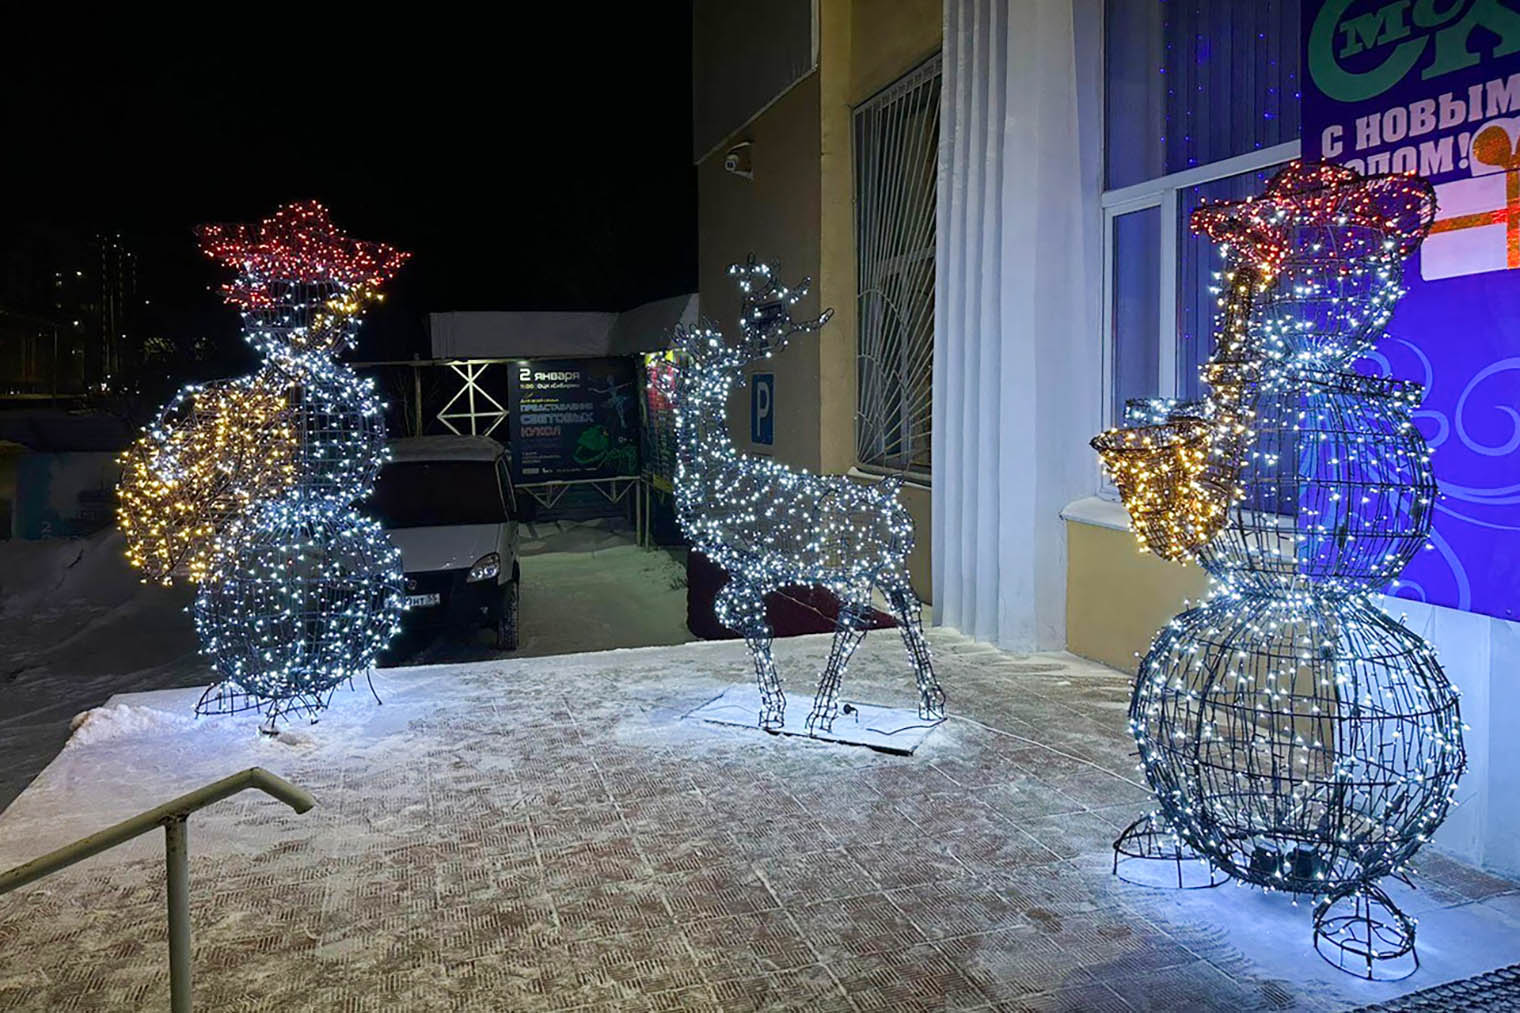 Областной центр культуры «Сибиряк» украсили фигурами оленя и снеговиков. Источник: соцсети администрации города Омска